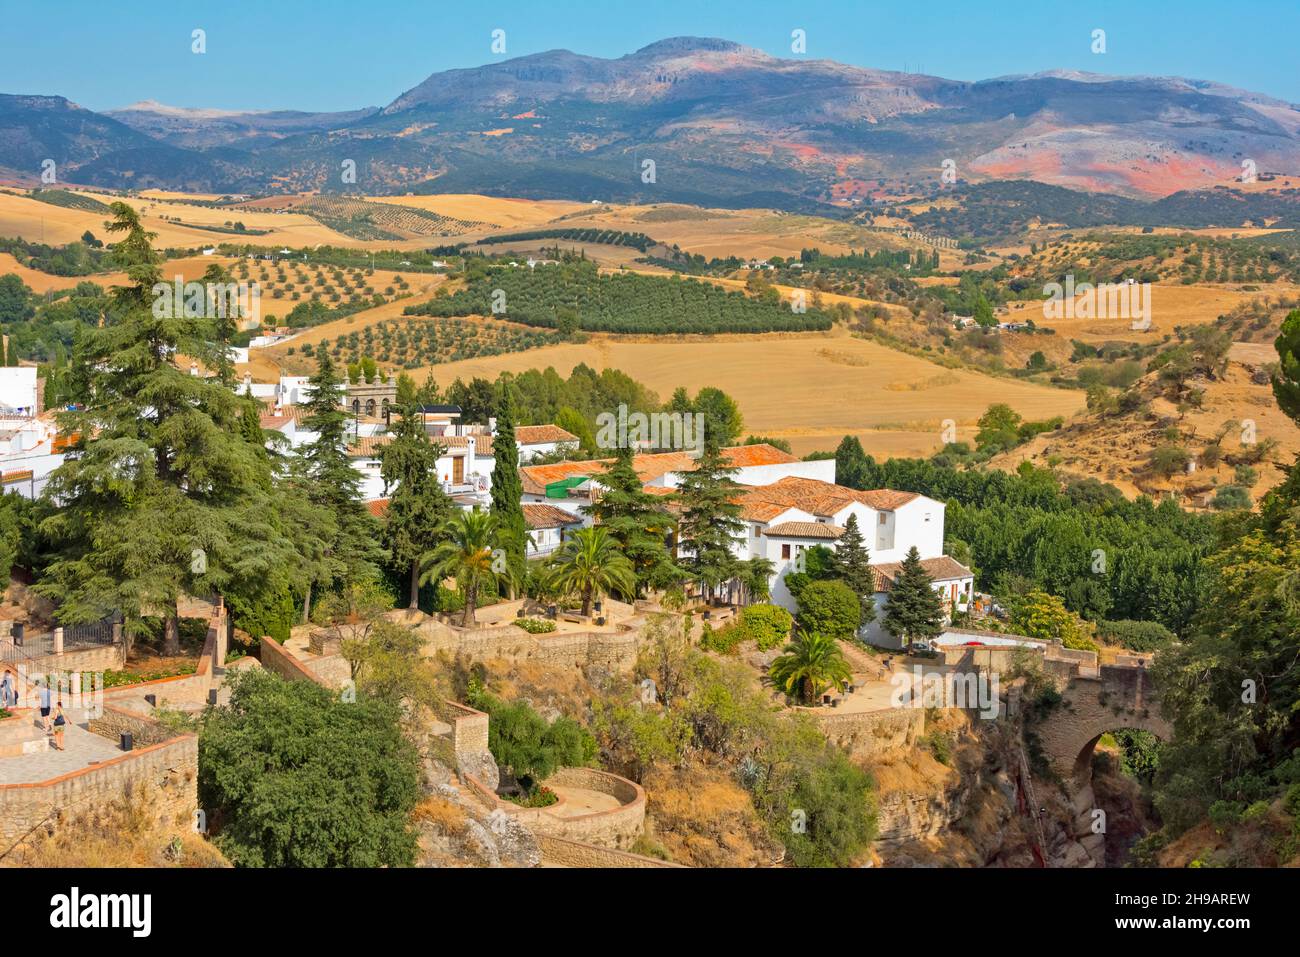 Houses and olive farm, Ronda, Malaga Province, Andalusia Autonomous Community, Spain Stock Photo